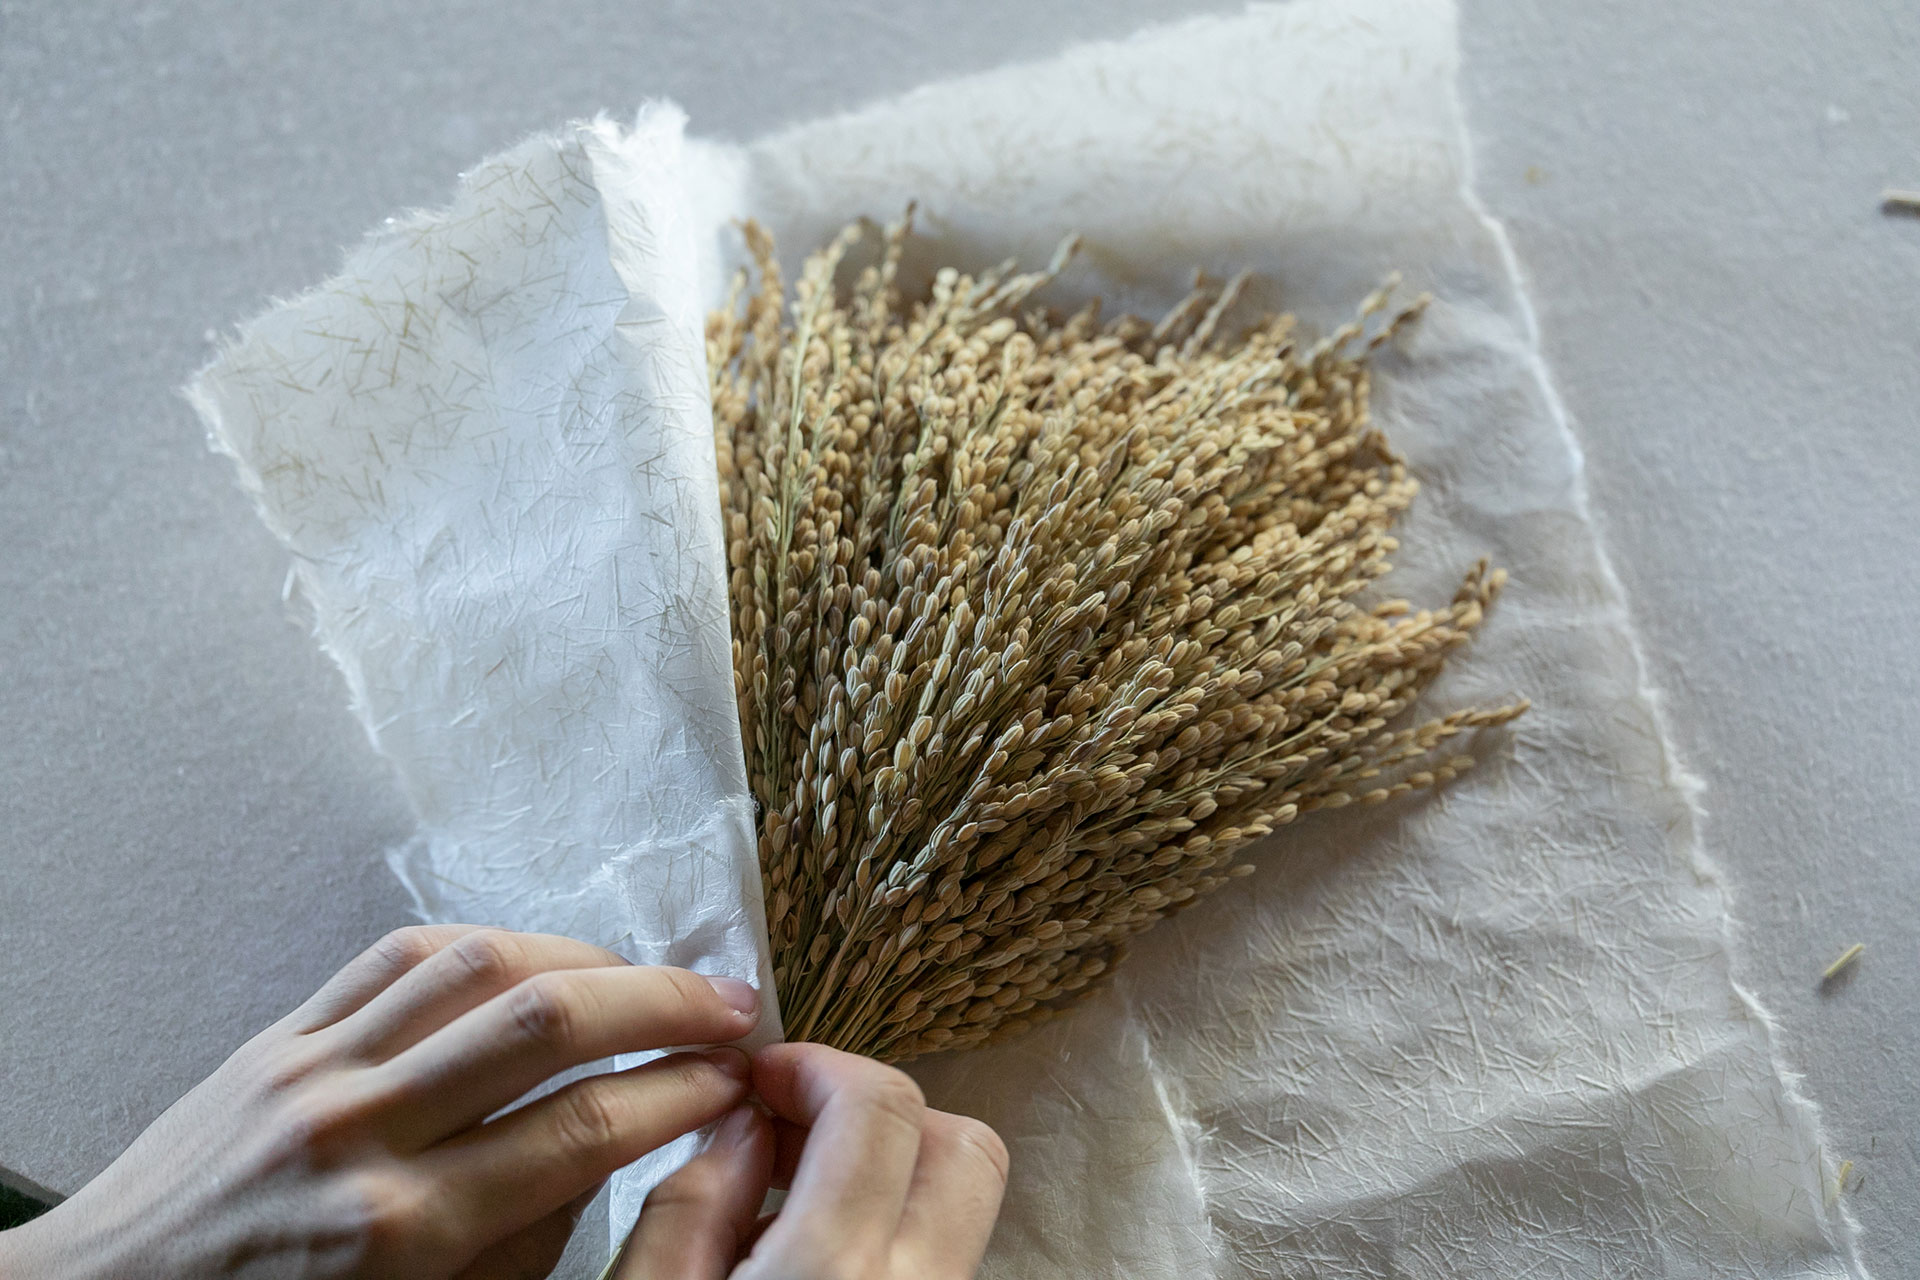 和紙に稲わらを斜めに置き、和紙を折りたたみながら稲わらを包み、末広がりの形を作る。